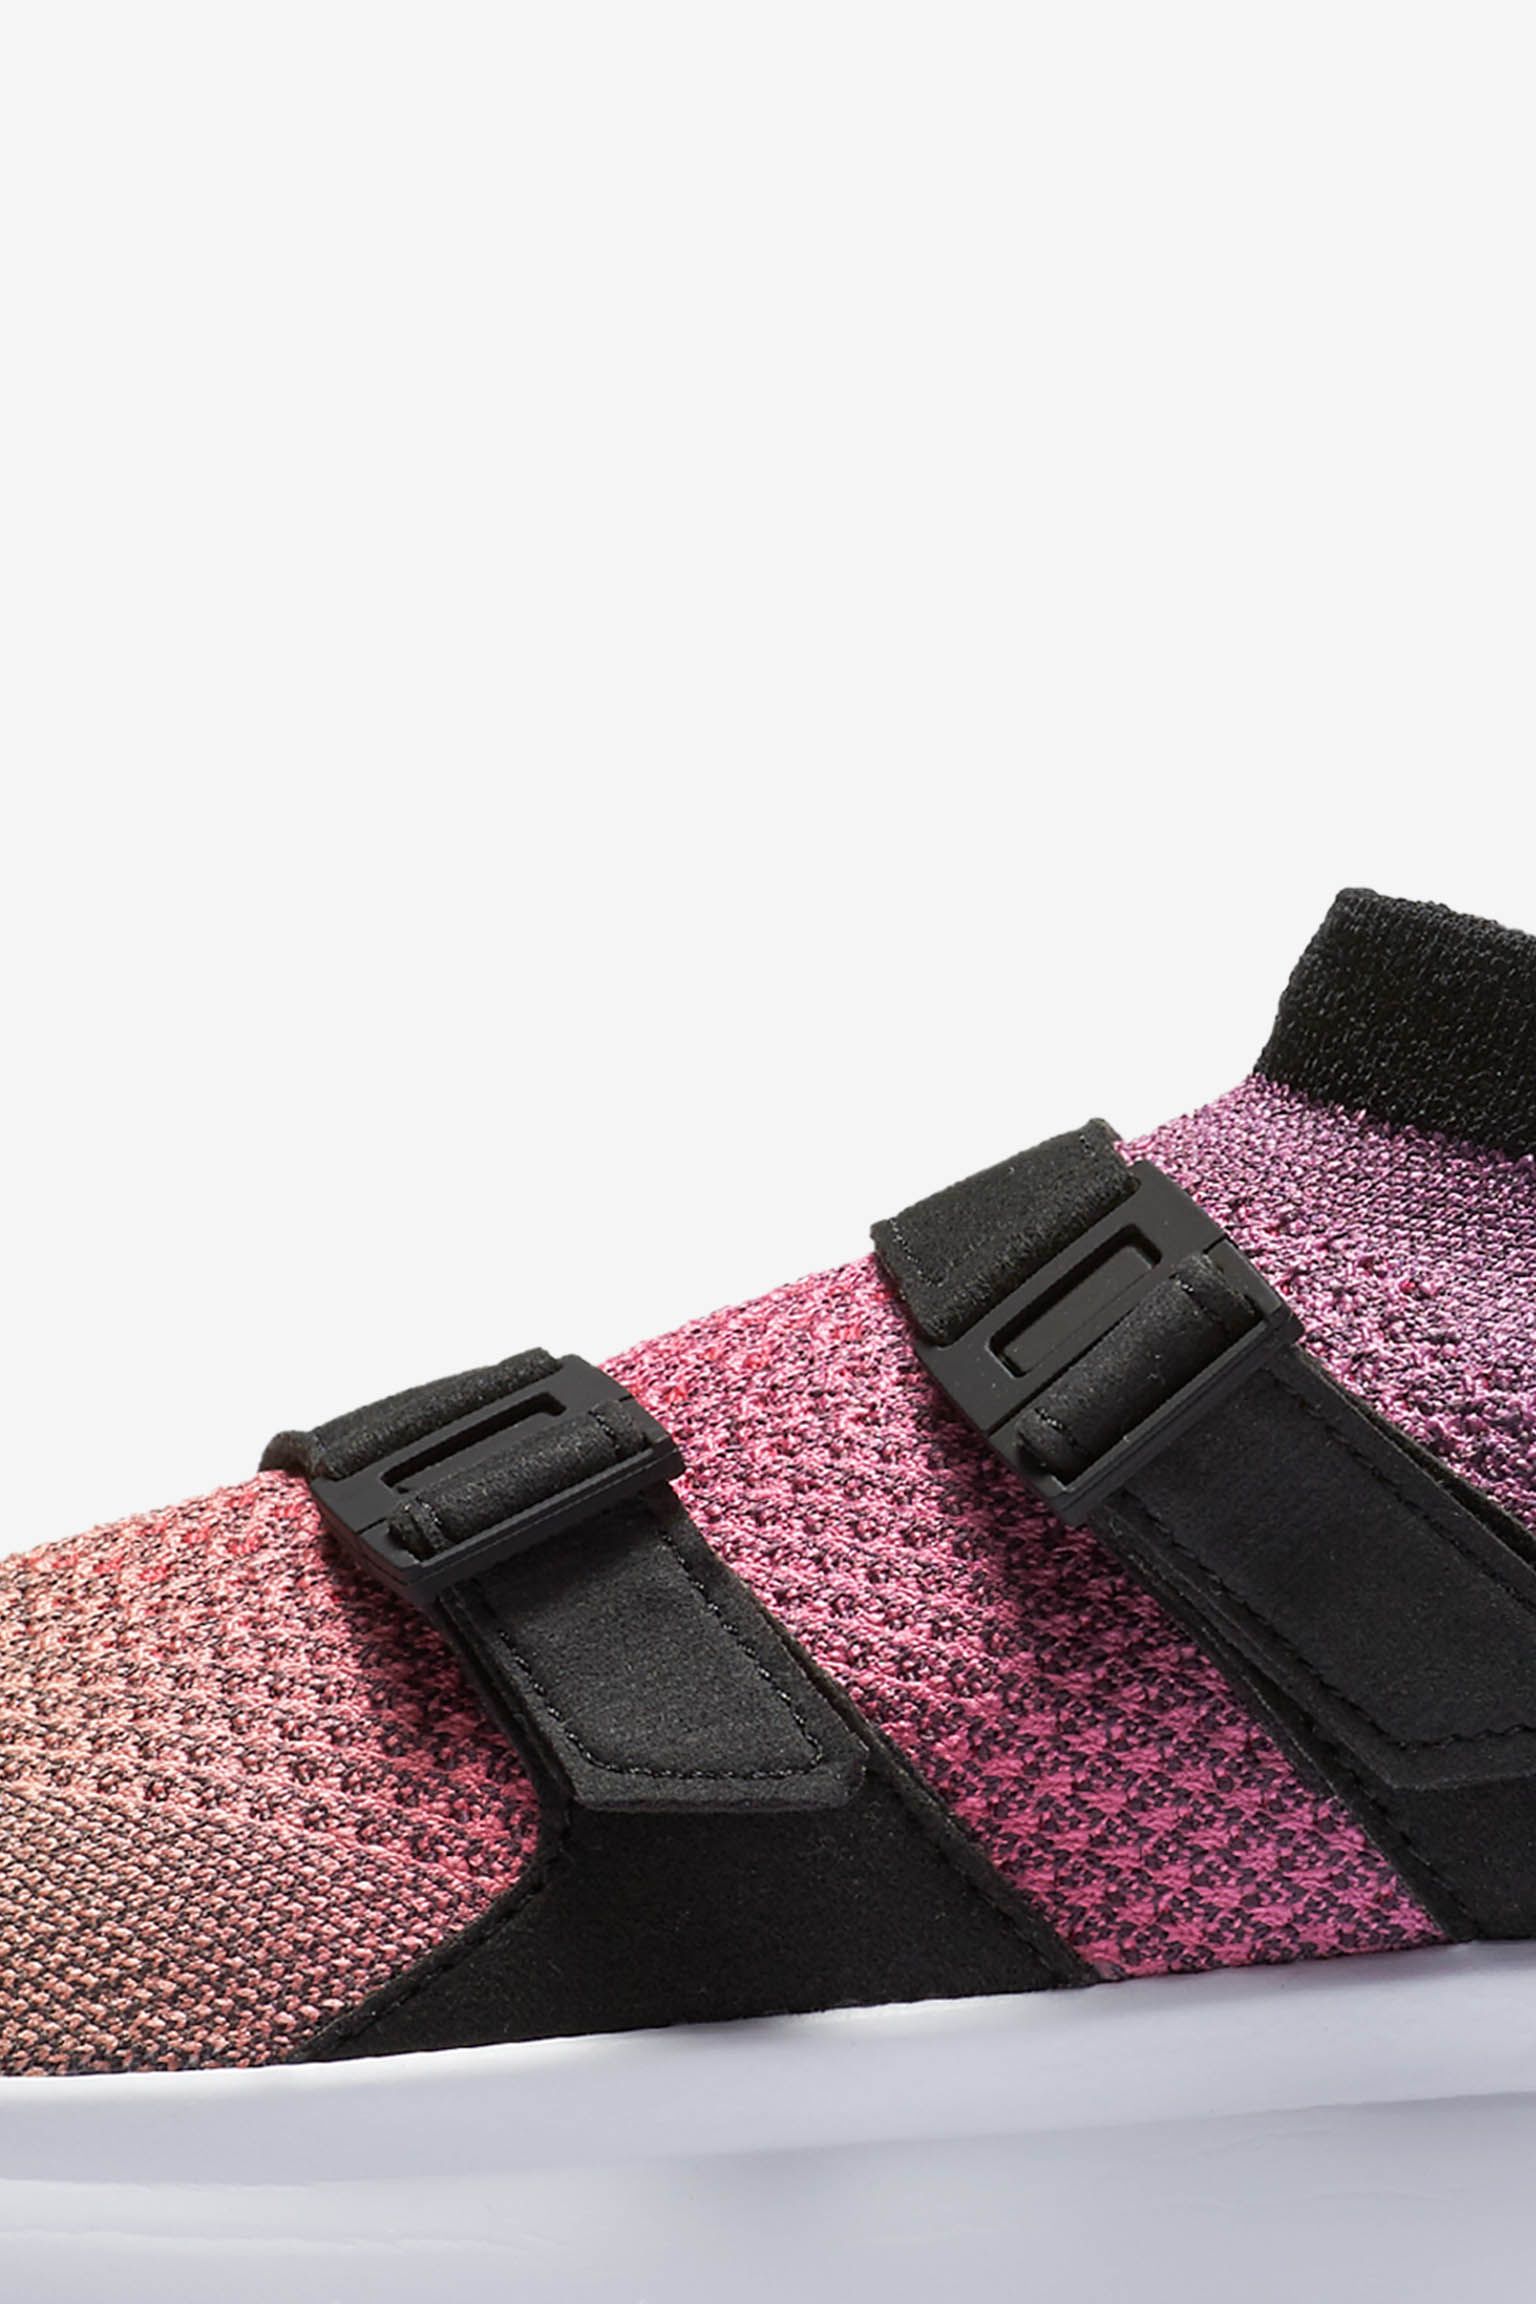 Brillante Comprimido Rafflesia Arnoldi Fecha de lanzamiento de las Nike Air Sock Racer Ultra Flyknit Premium  "Yellow Strike &amp; Racer Pink". Nike SNKRS ES